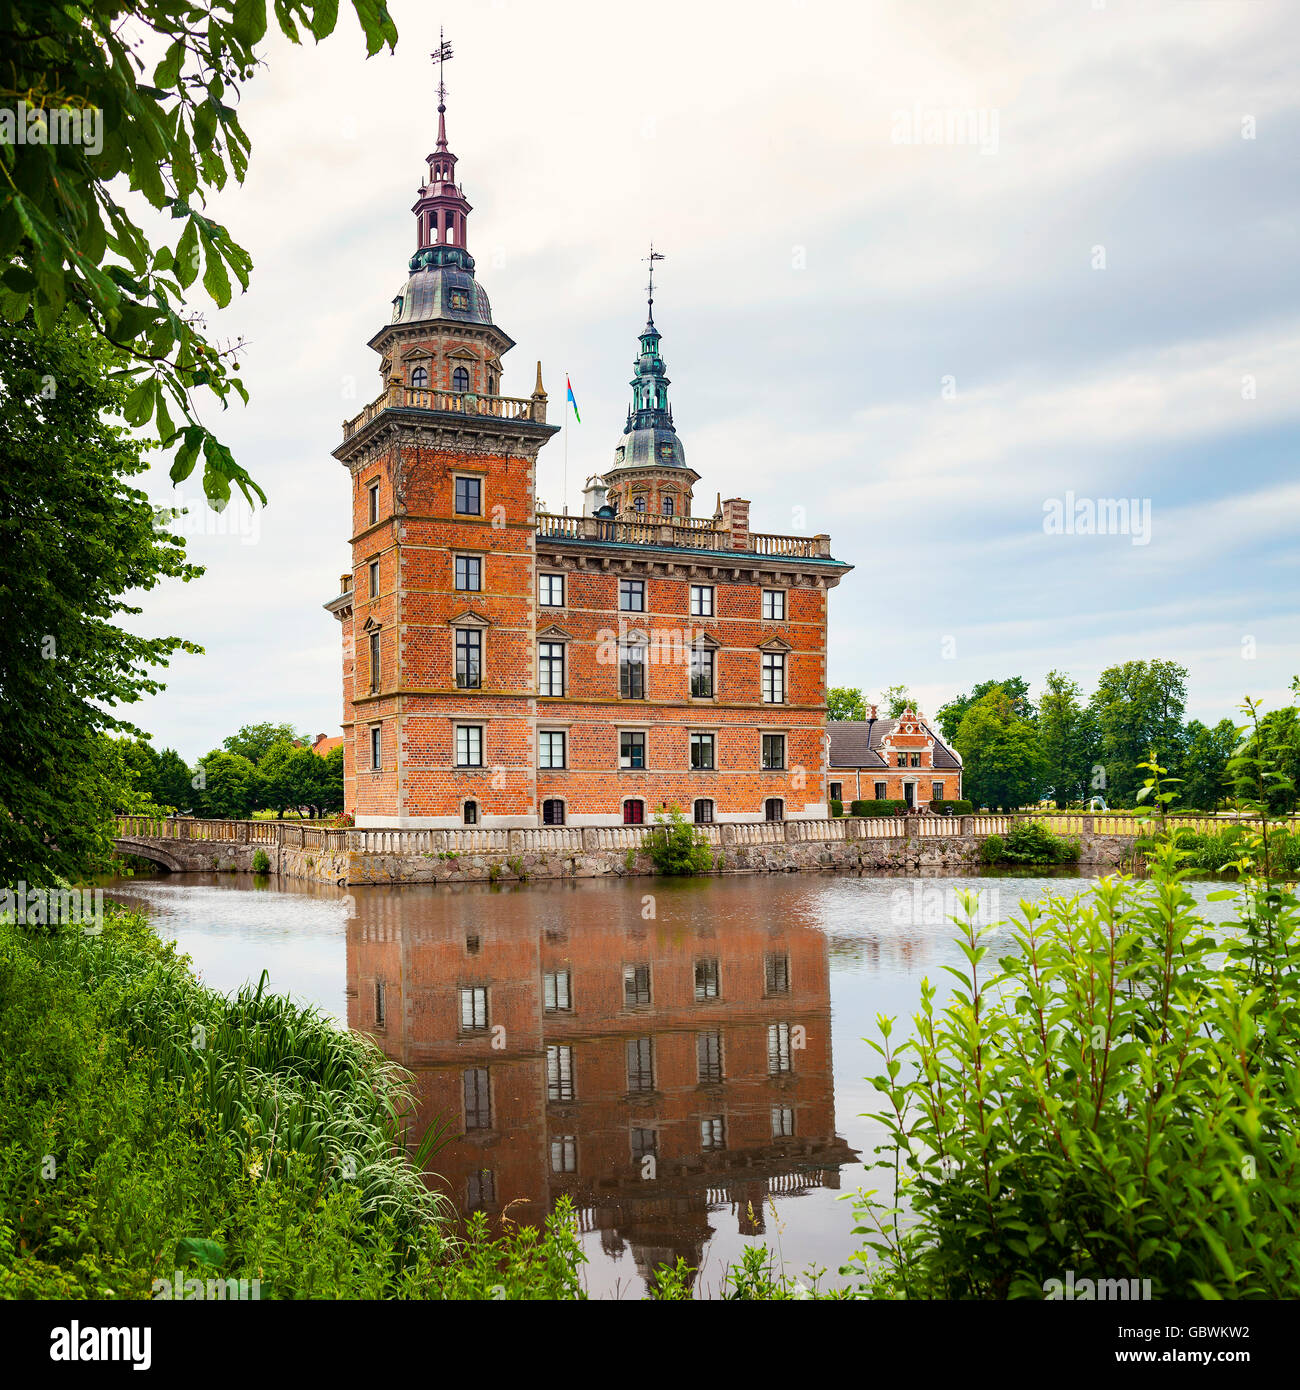 Bild der Gärten und der Burg von Marsvinsholm inmitten eines Sees. Ystad, Schweden. Stockfoto